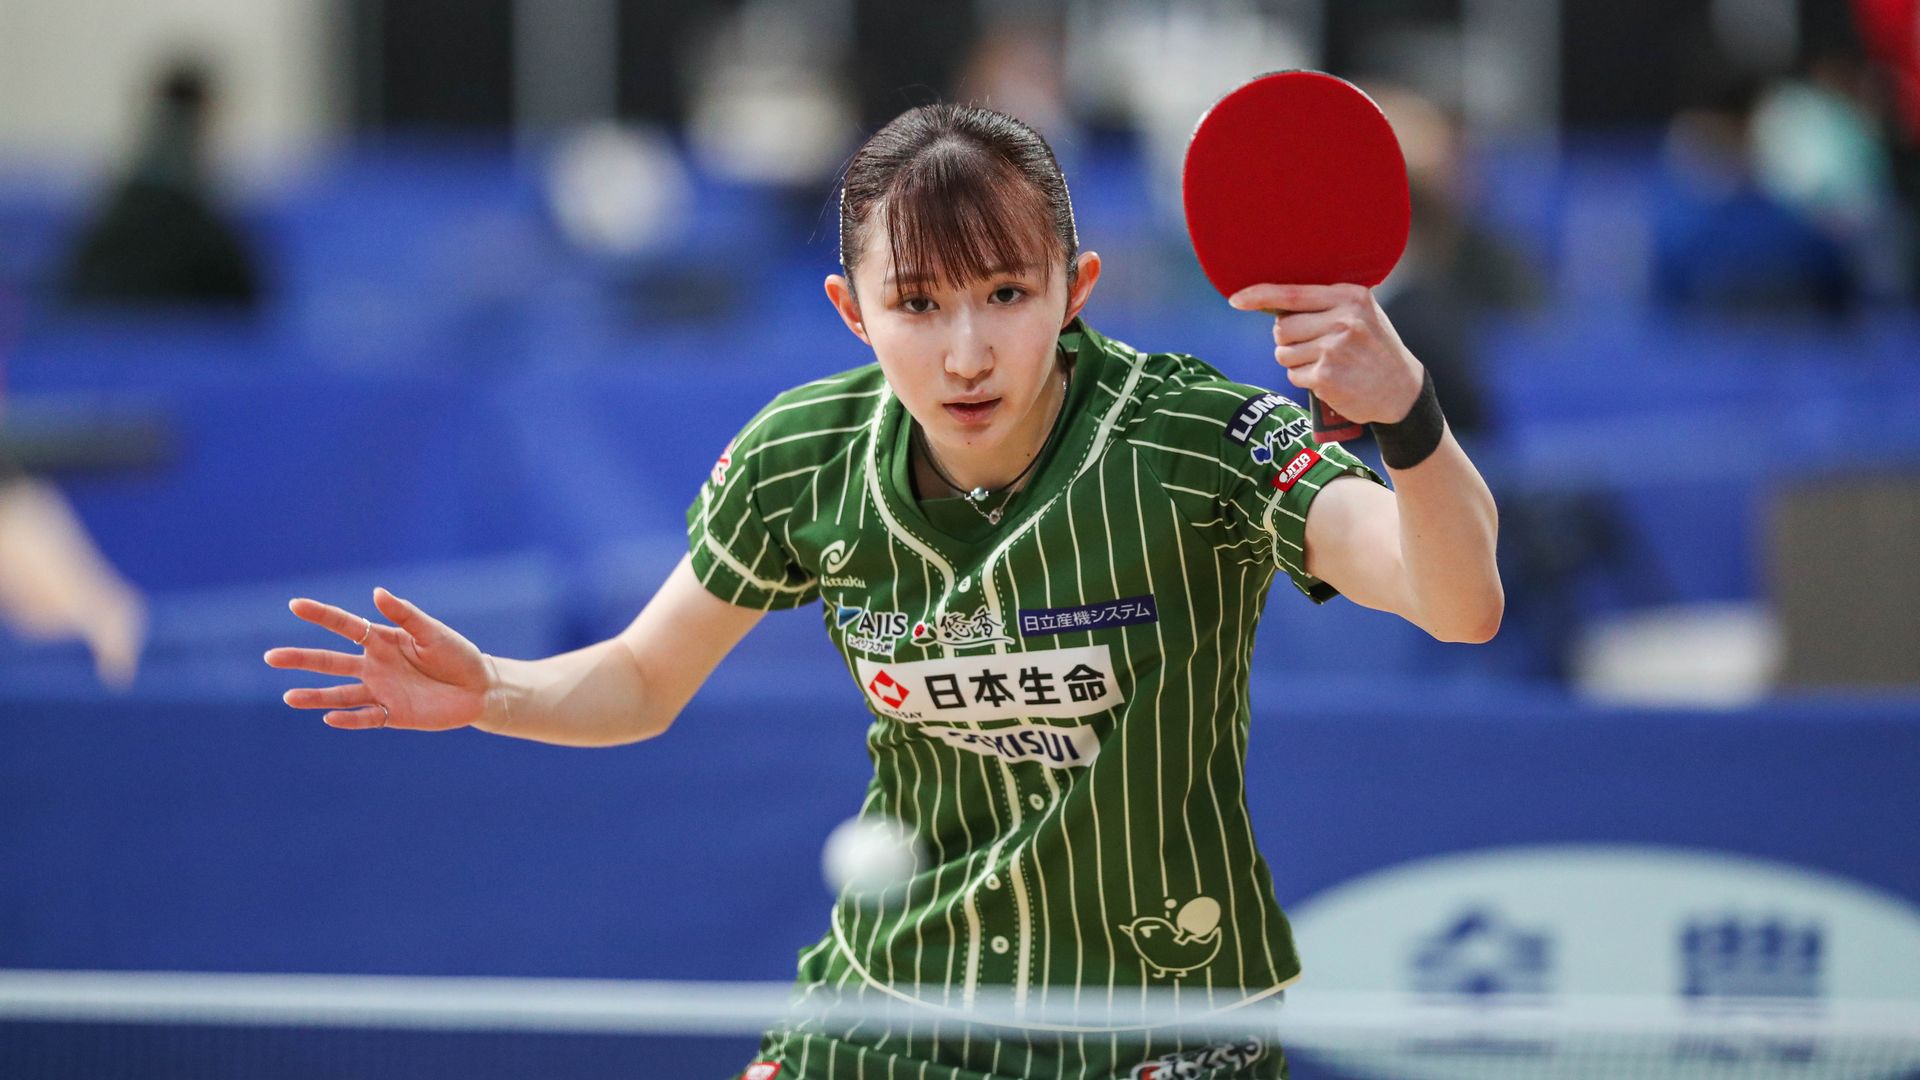 【全日本卓球】早田ひなが上々の滑り出し、女子シングルス4回戦をストレート勝ち